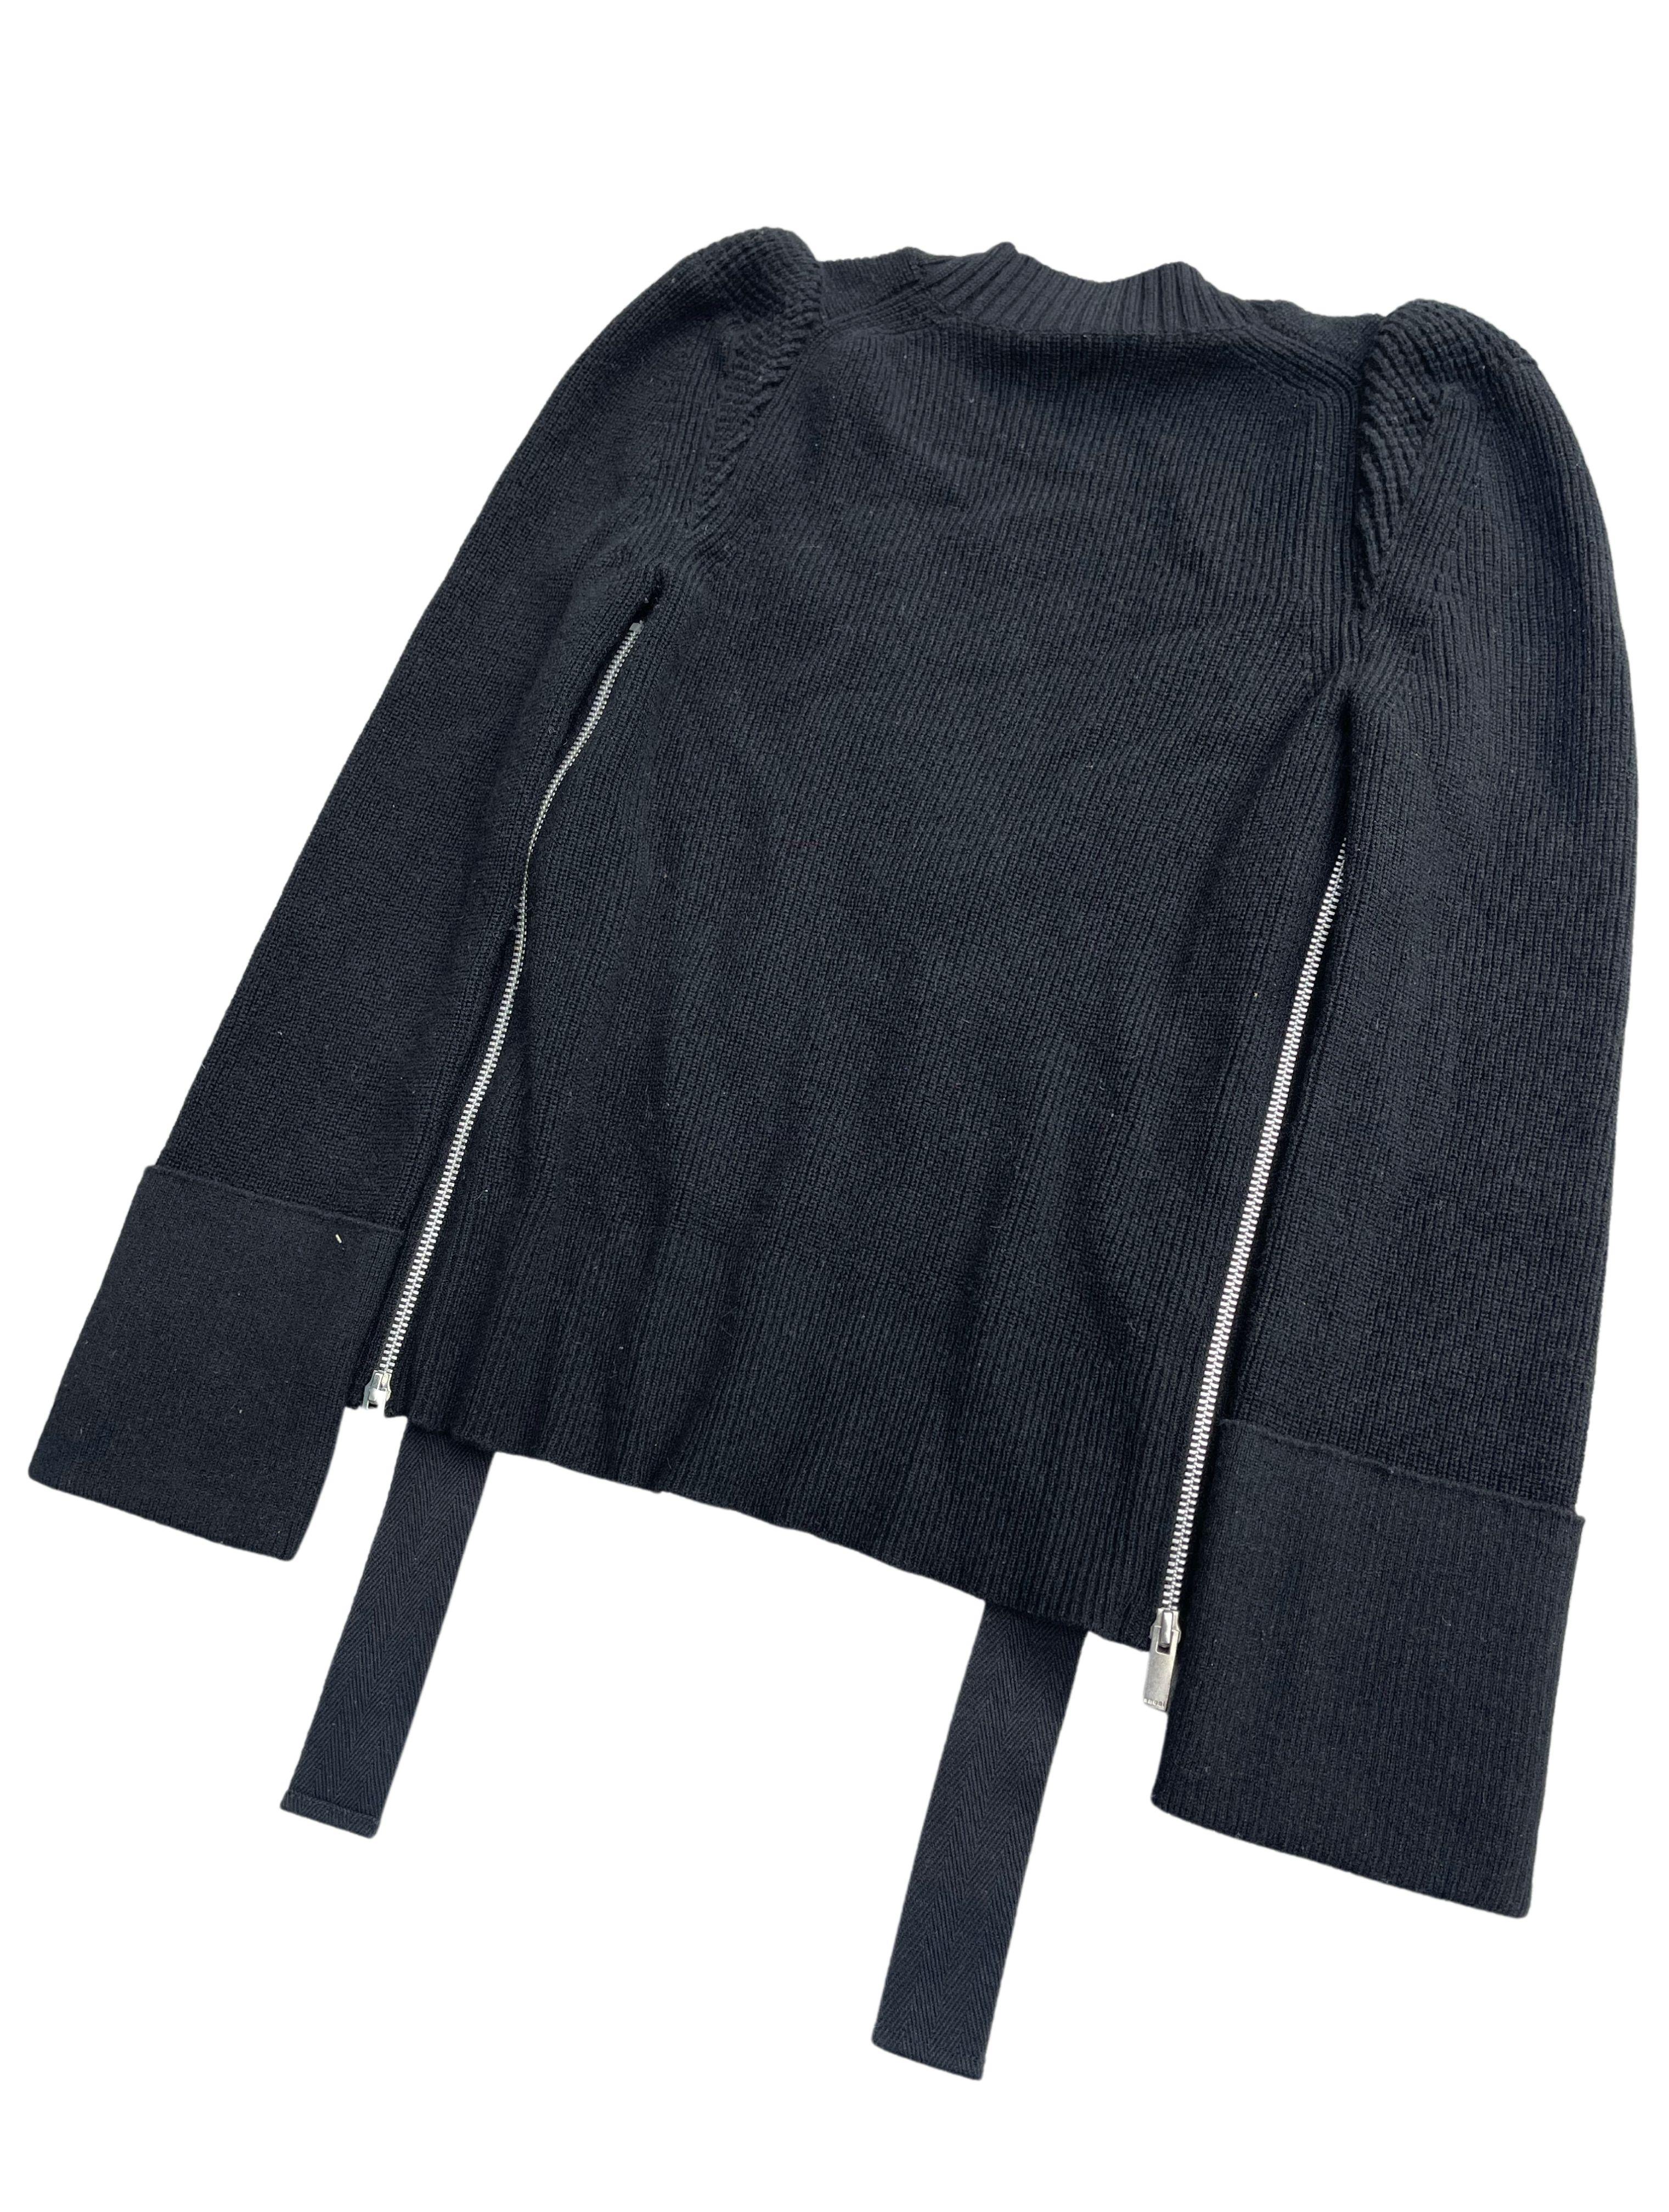 Black Sacai Side Slit Sweater,  Spring Summer 2016 For Sale